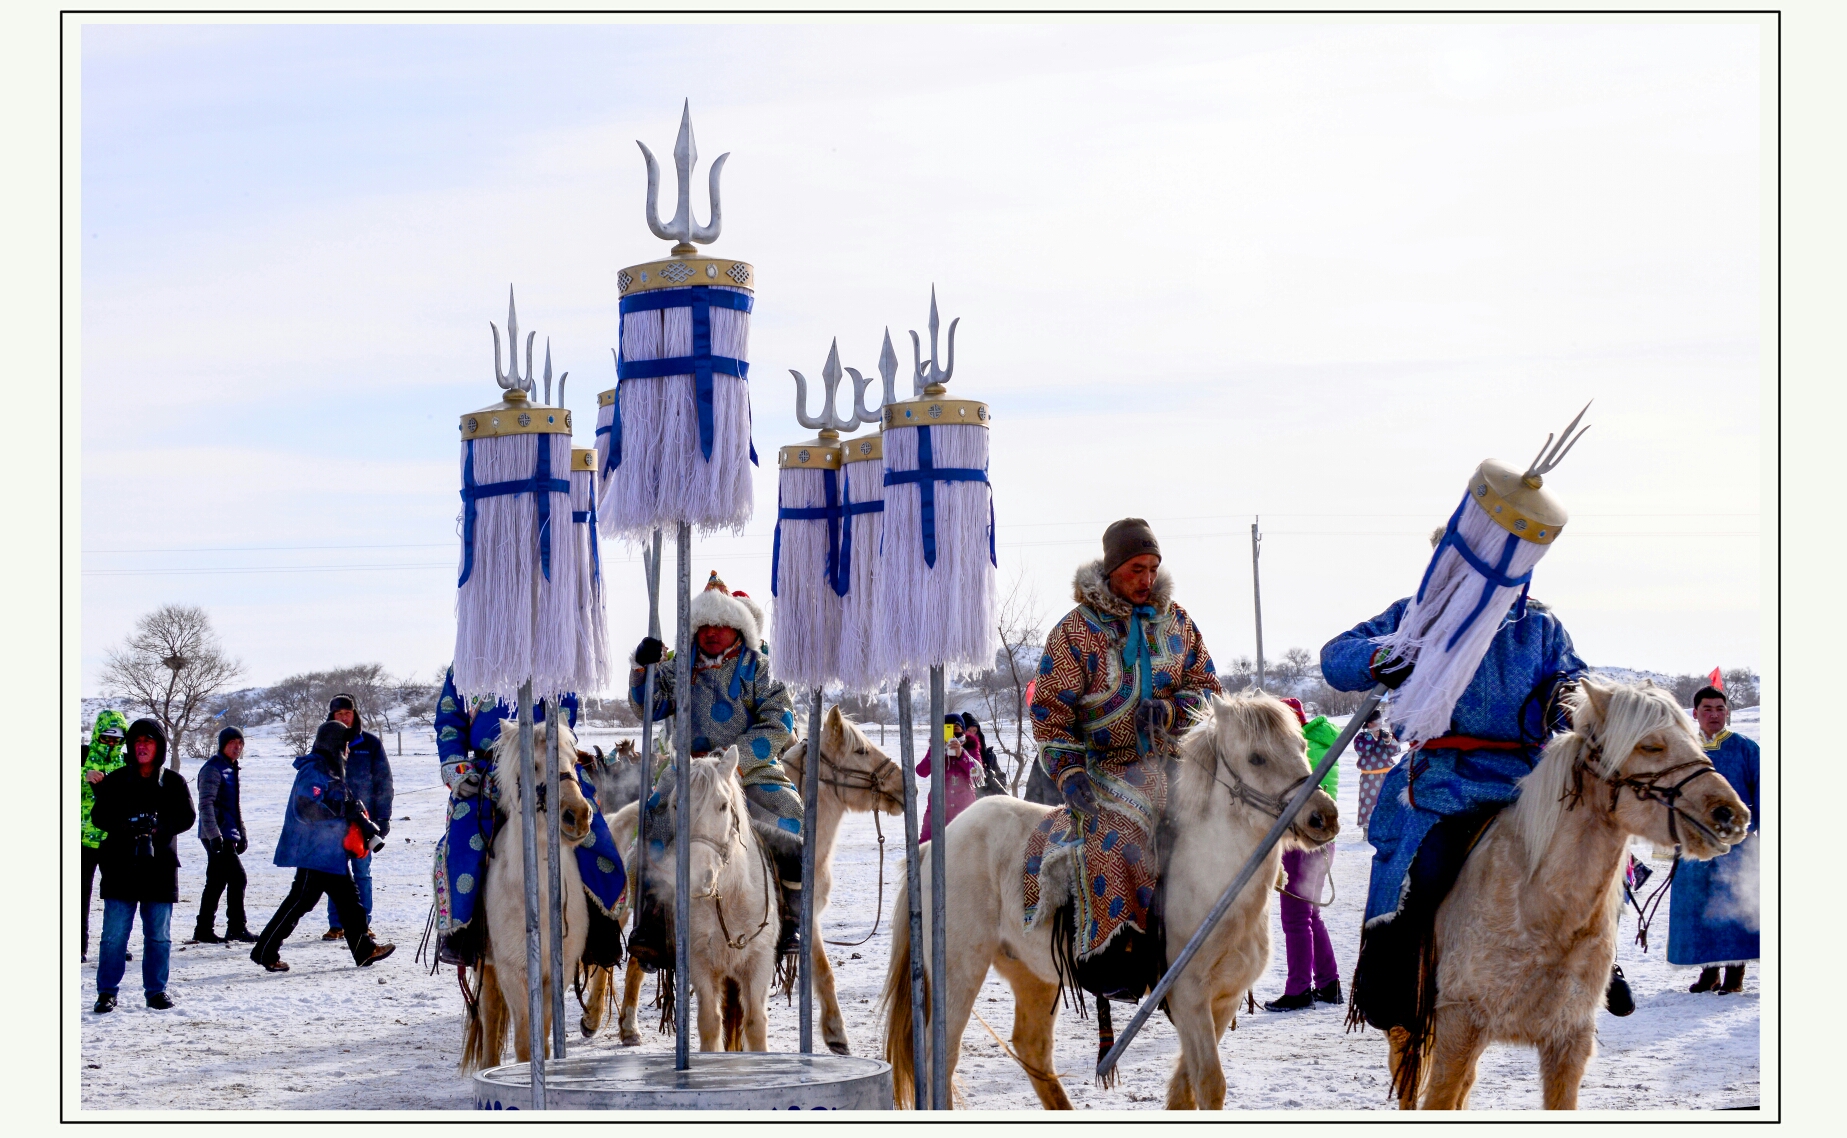 那达慕是蒙古族的一个传统节日盛会,是文化,娱乐的意思